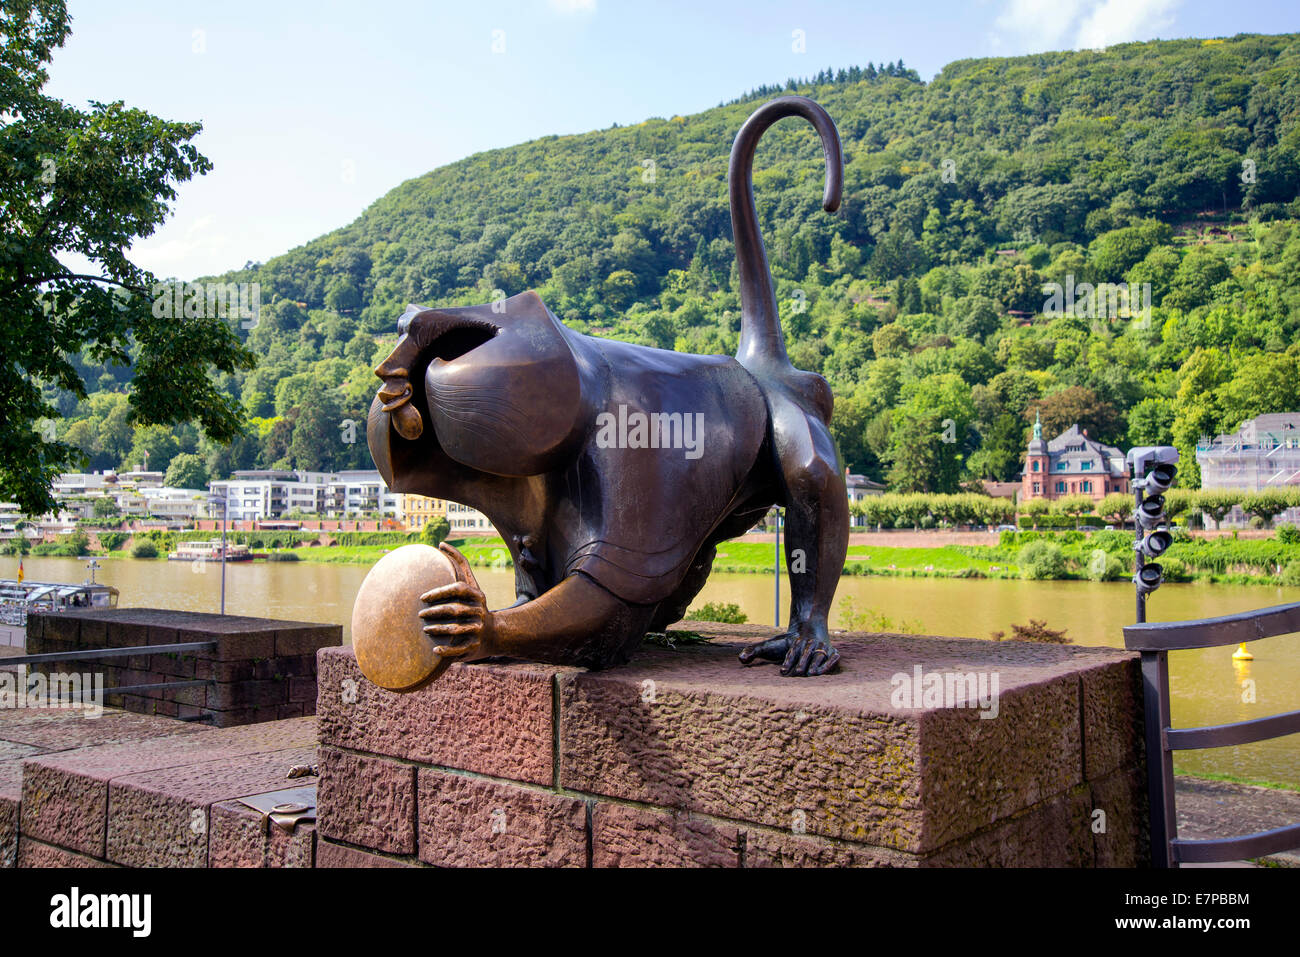 Heidelberg Monkey, sculpture de métal d'un singe près du vieux pont sur la rivière, Heidelberg, Bade-Wurtemberg, Allemagne , Europe Banque D'Images